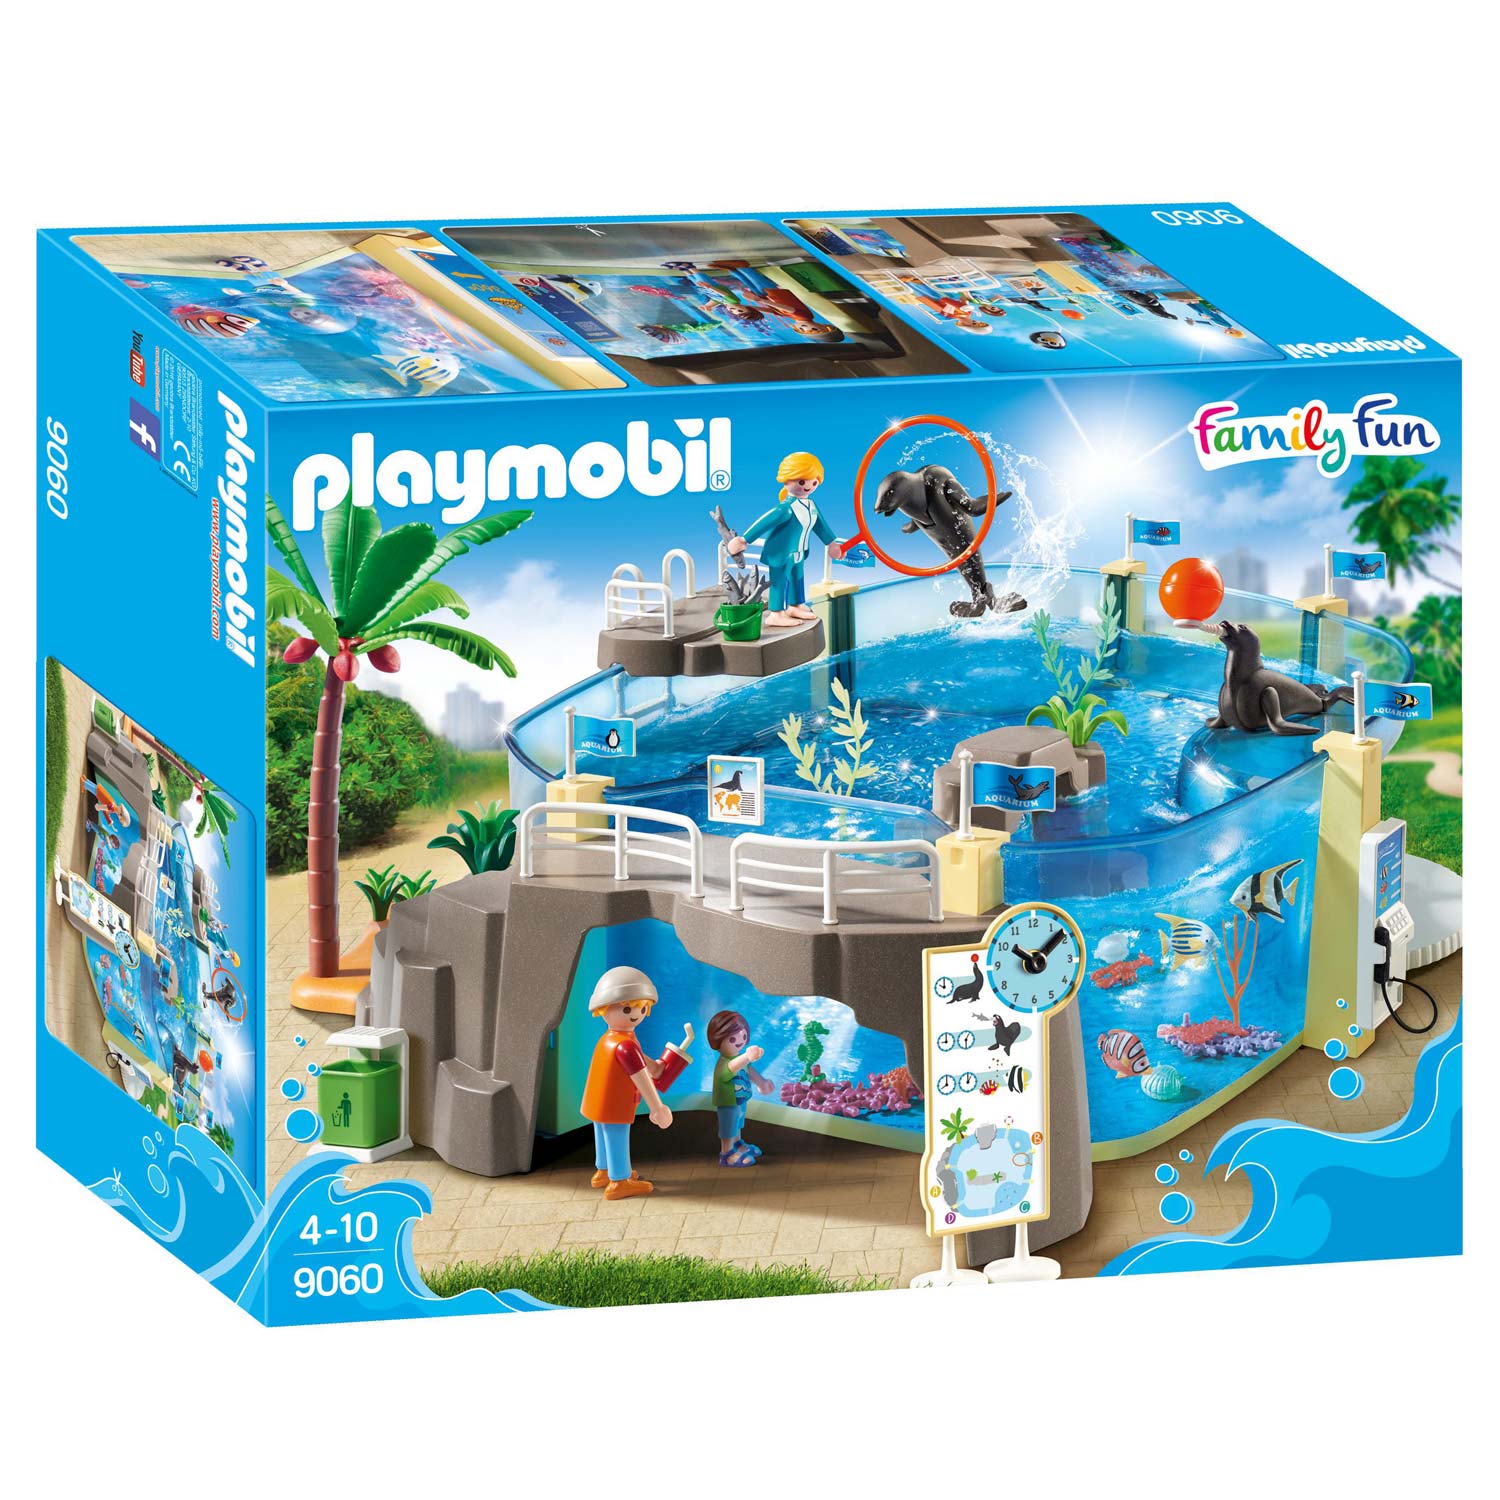 Playmobil 9060 Family Fun Meeresaquarium